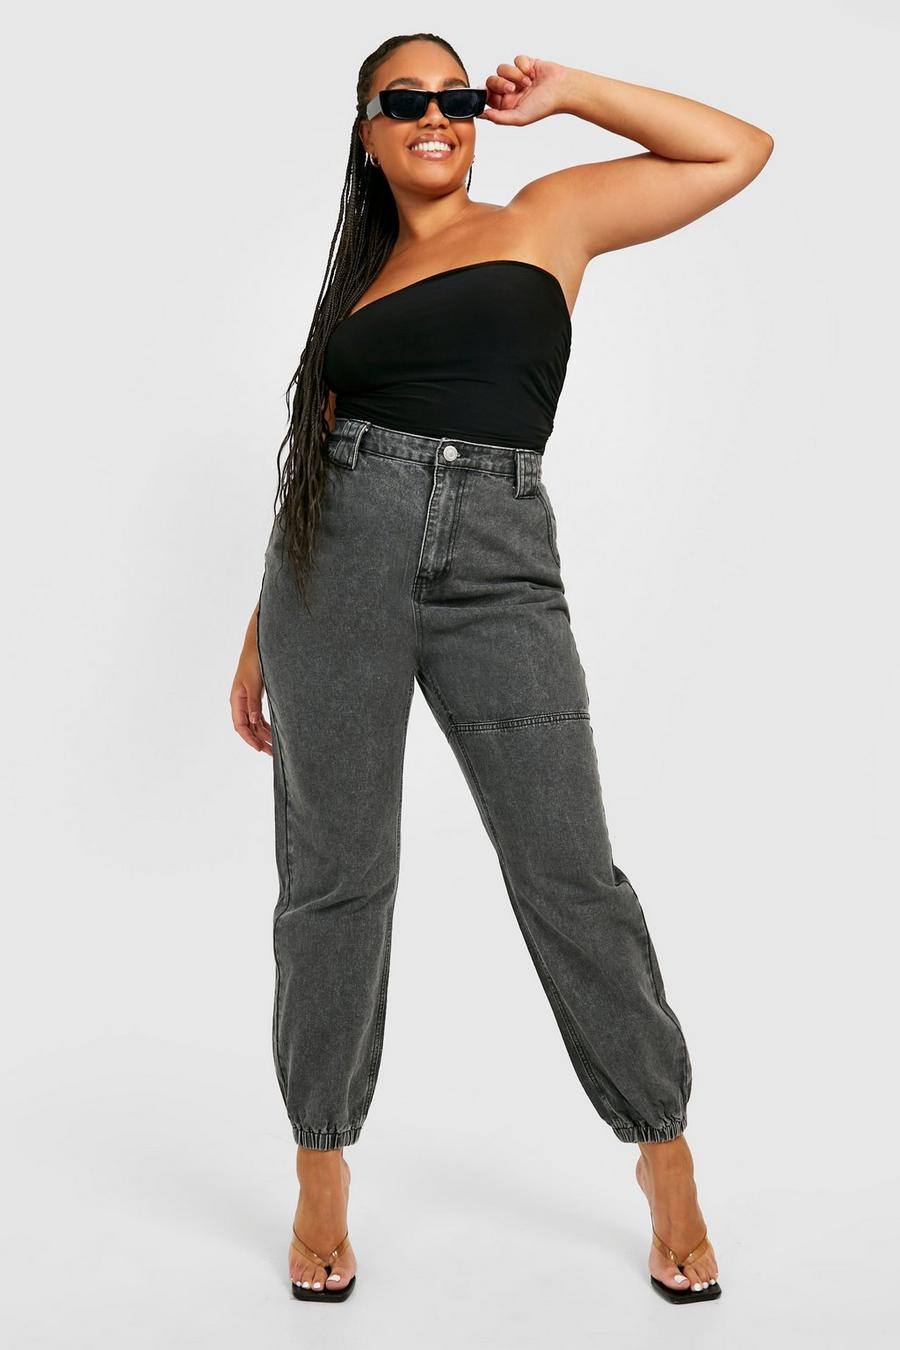 אפור grey מכנסי טרנינג mid rise מבד ג'ינס בסגנון שימושי, למידות גדולות